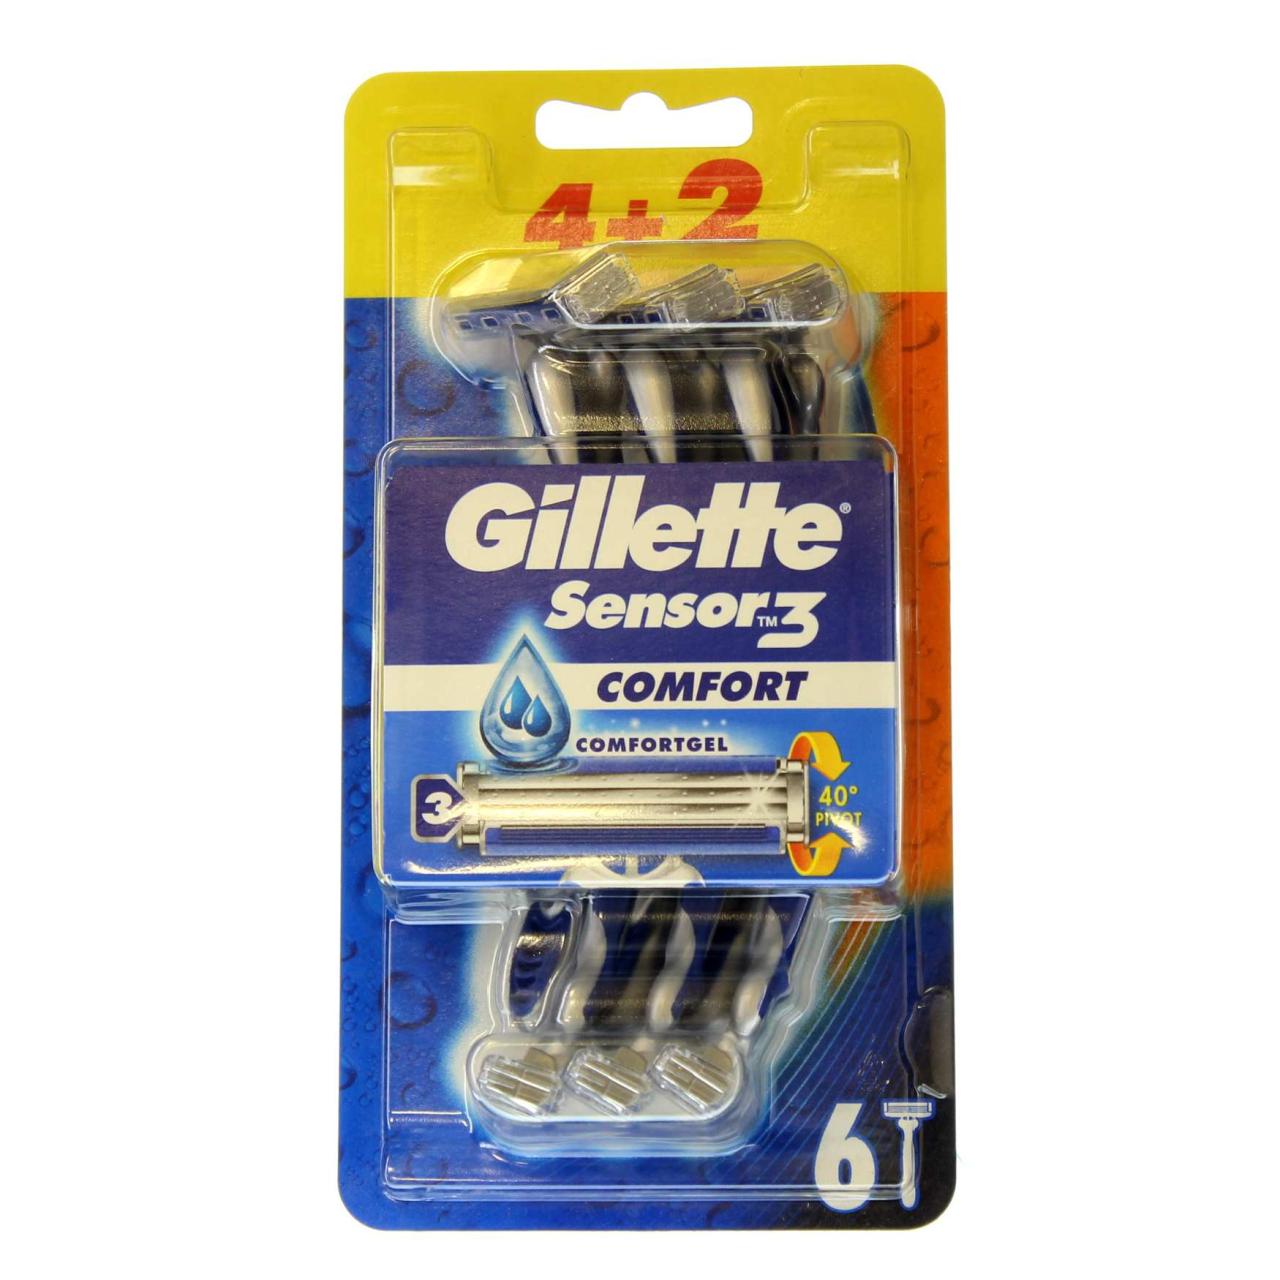 Gillette Sensor3 Comfort 4+ 2ct Value Pack Einwegrasierer